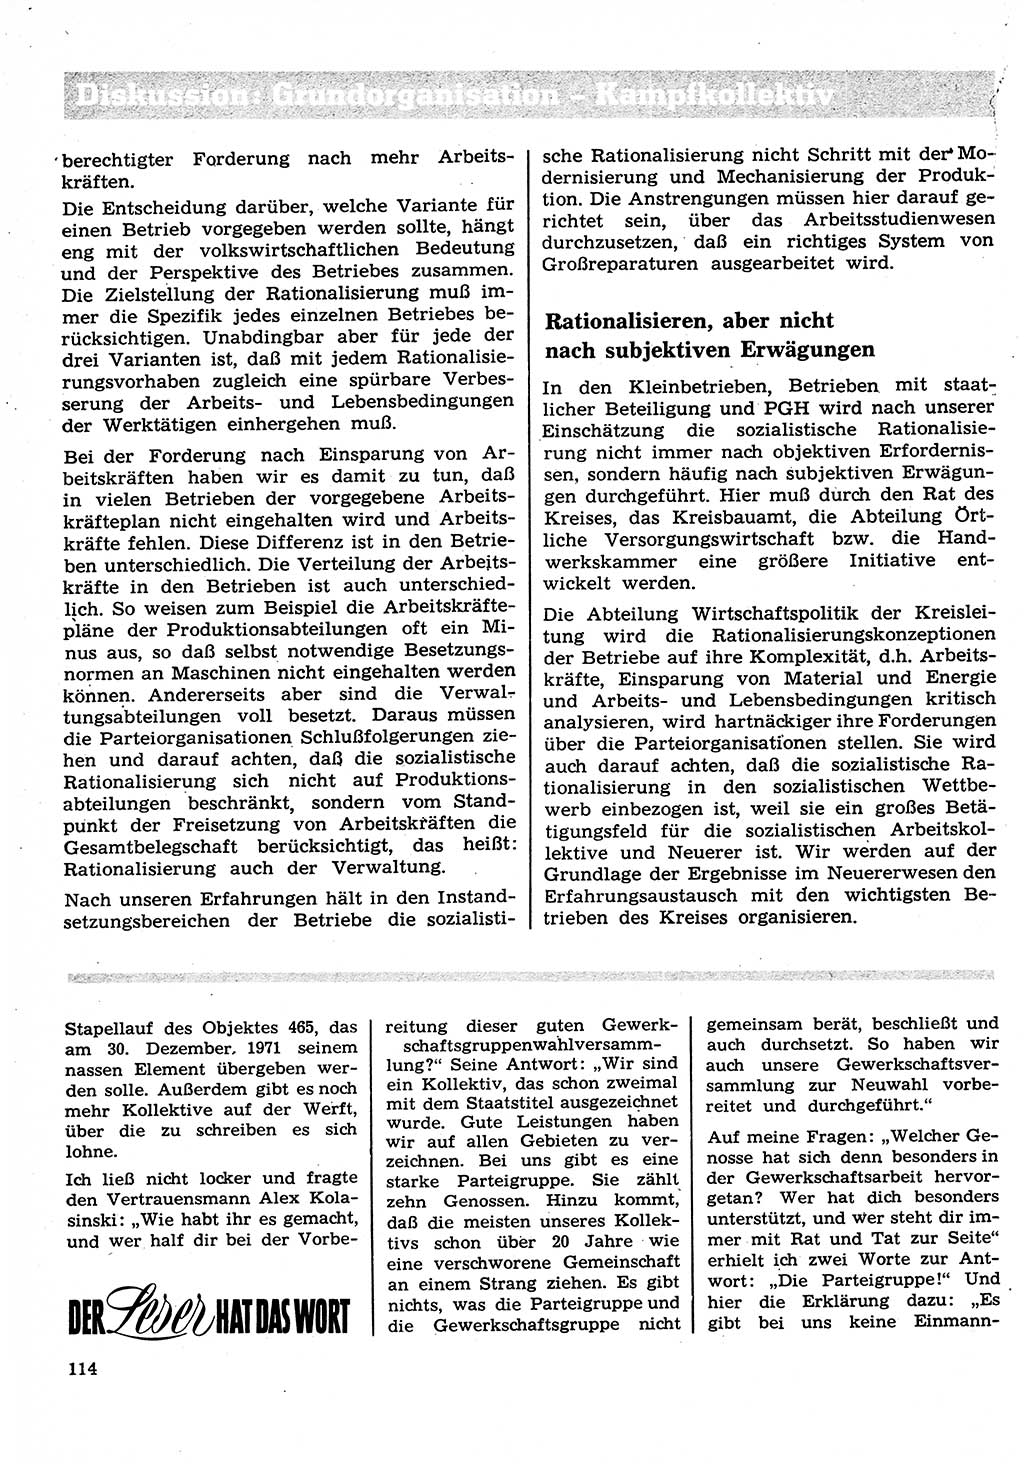 Neuer Weg (NW), Organ des Zentralkomitees (ZK) der SED (Sozialistische Einheitspartei Deutschlands) für Fragen des Parteilebens, 27. Jahrgang [Deutsche Demokratische Republik (DDR)] 1972, Seite 114 (NW ZK SED DDR 1972, S. 114)